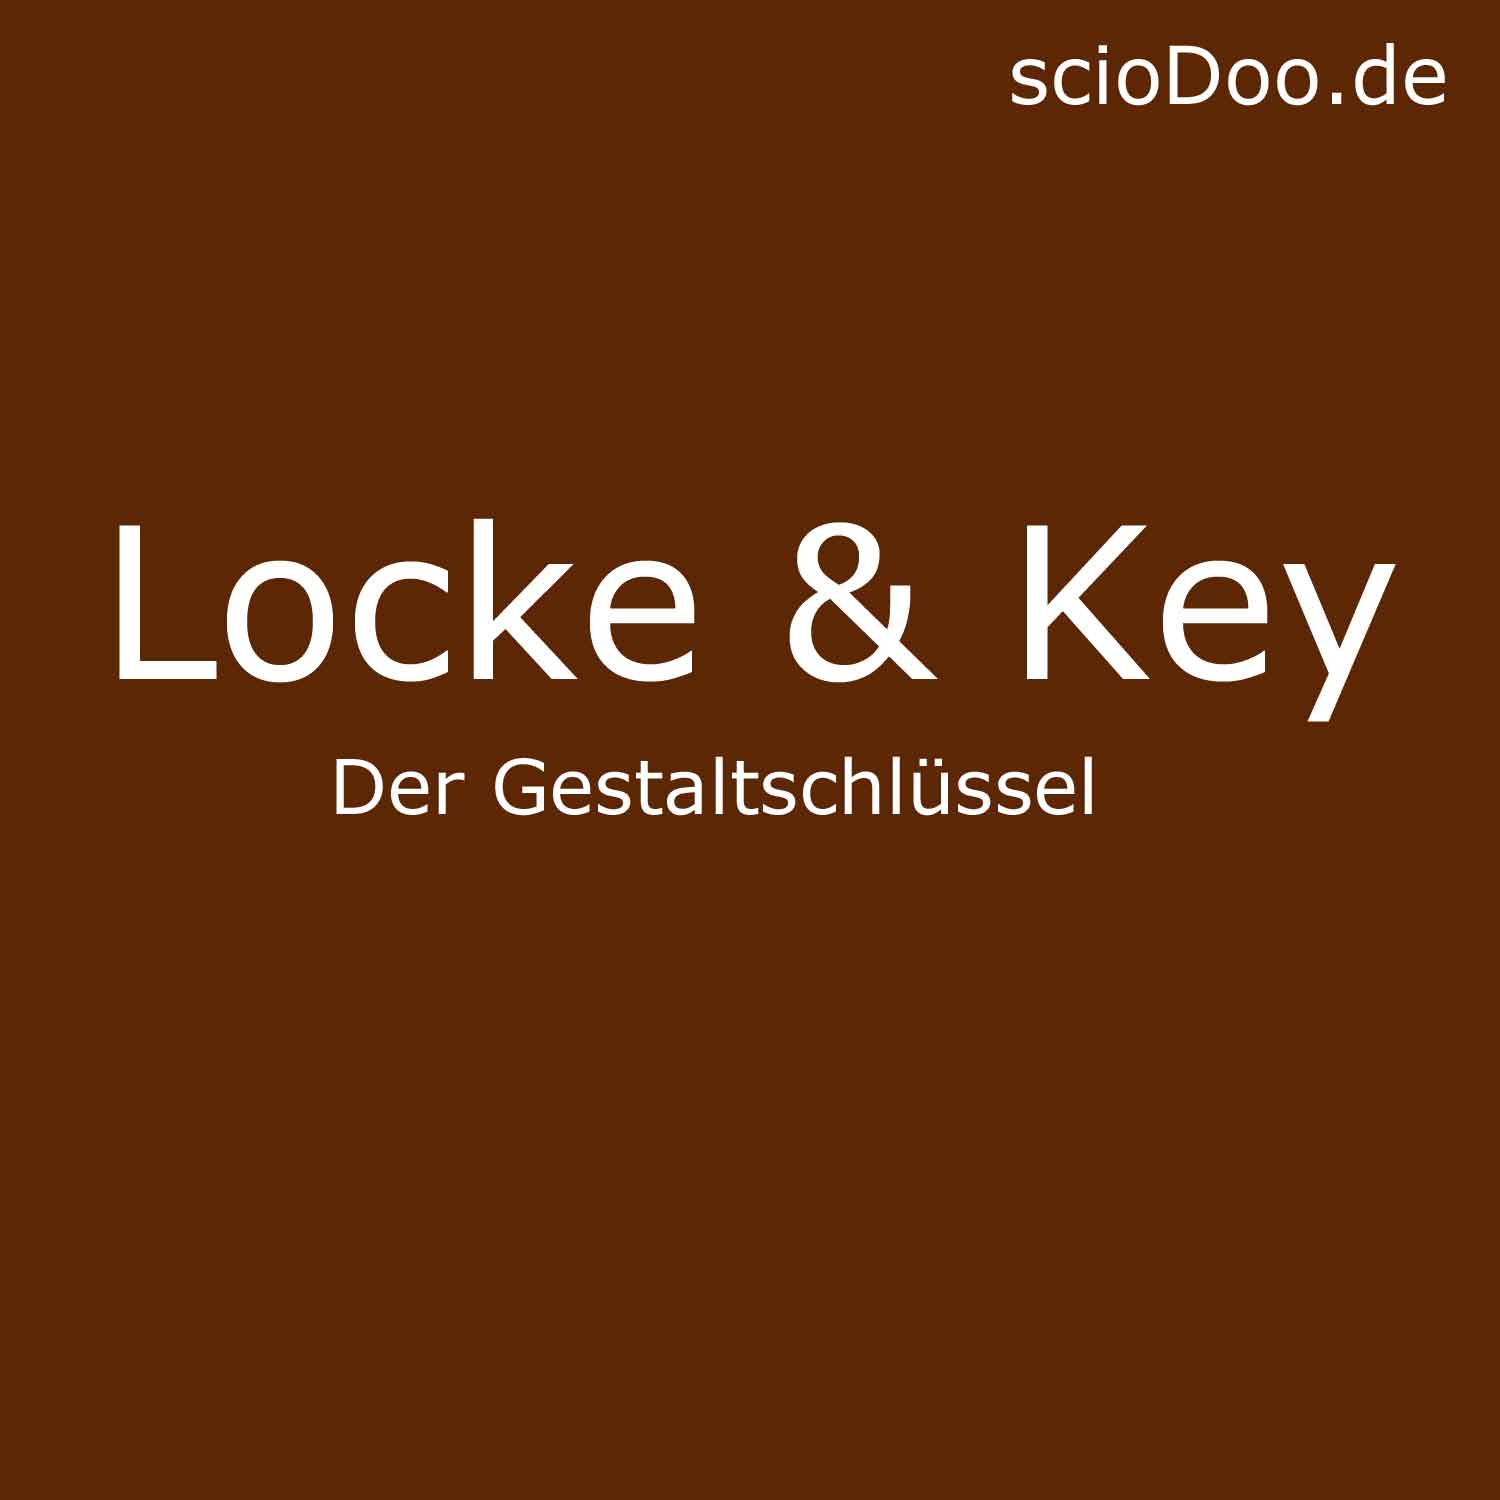 Gestaltschlüssel aus Locke & Key zum Verändern der Identität und